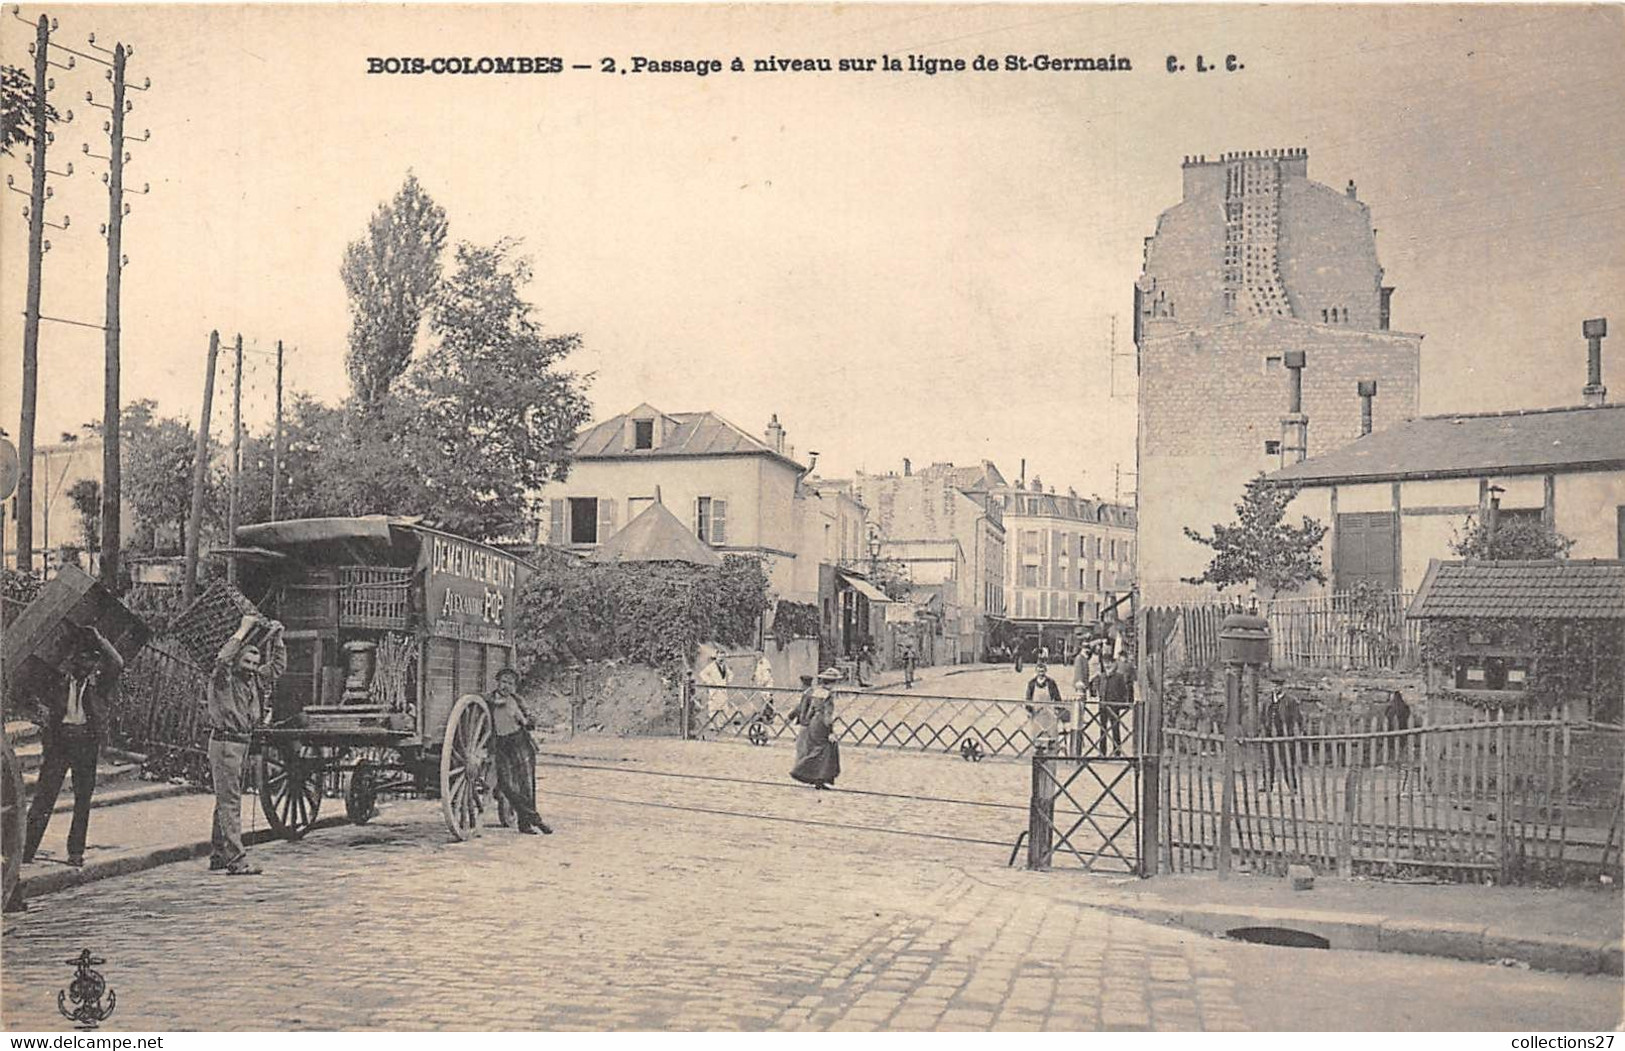 92-BOIS-COLOMBES- PASSAGE A NIVEAU SUR LA LIGNE DE ST-GERMAIN - Colombes